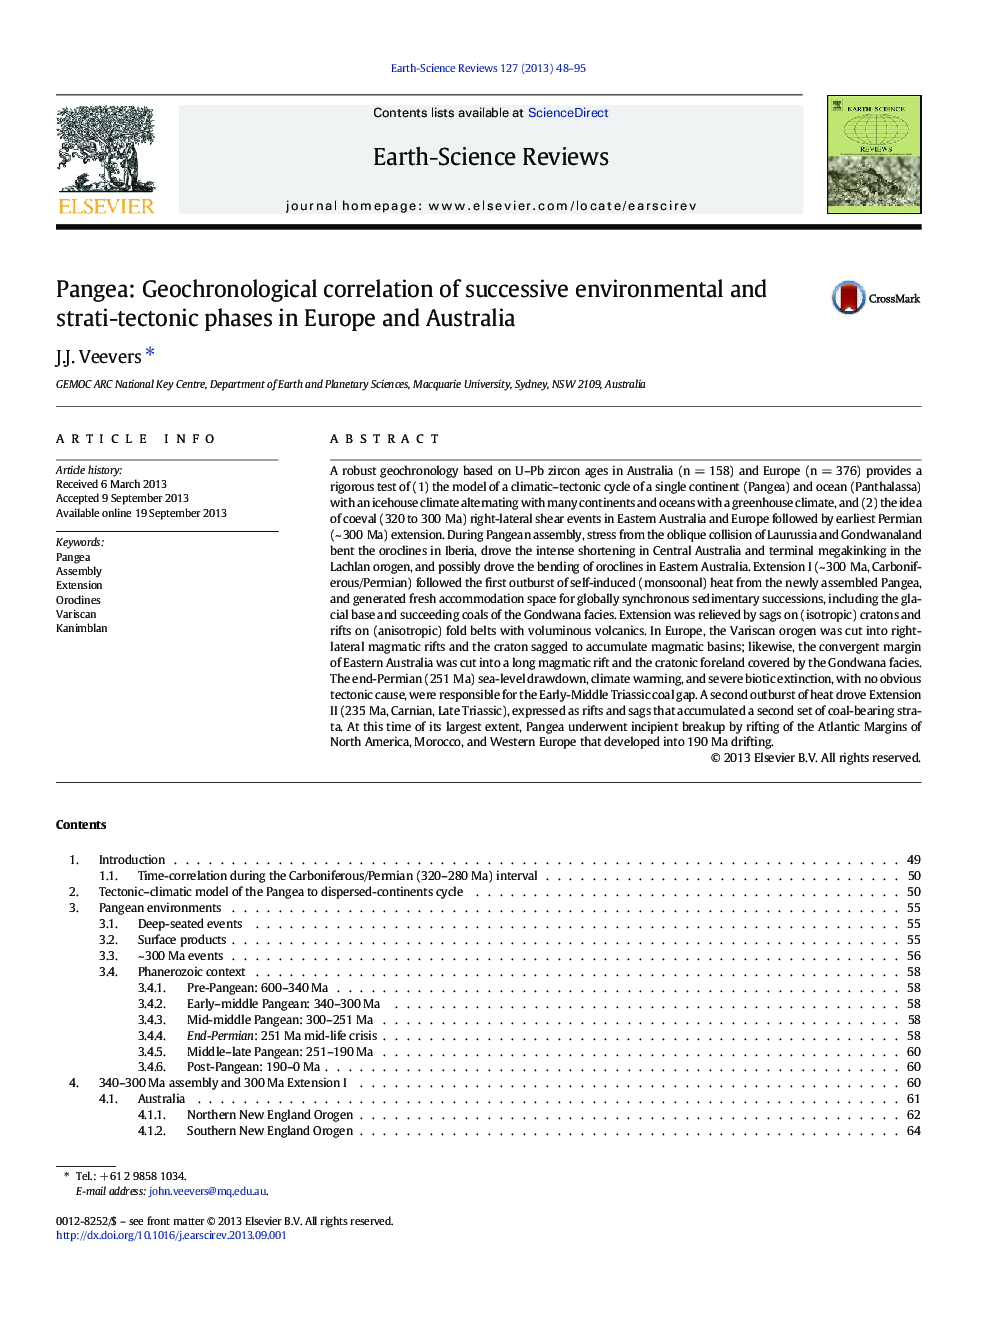 پانگها: همبستگی ژئوتکنولوژیکی فازهای زیست محیطی و ساختاری- تکتونیکی در اروپا و استرالیا 